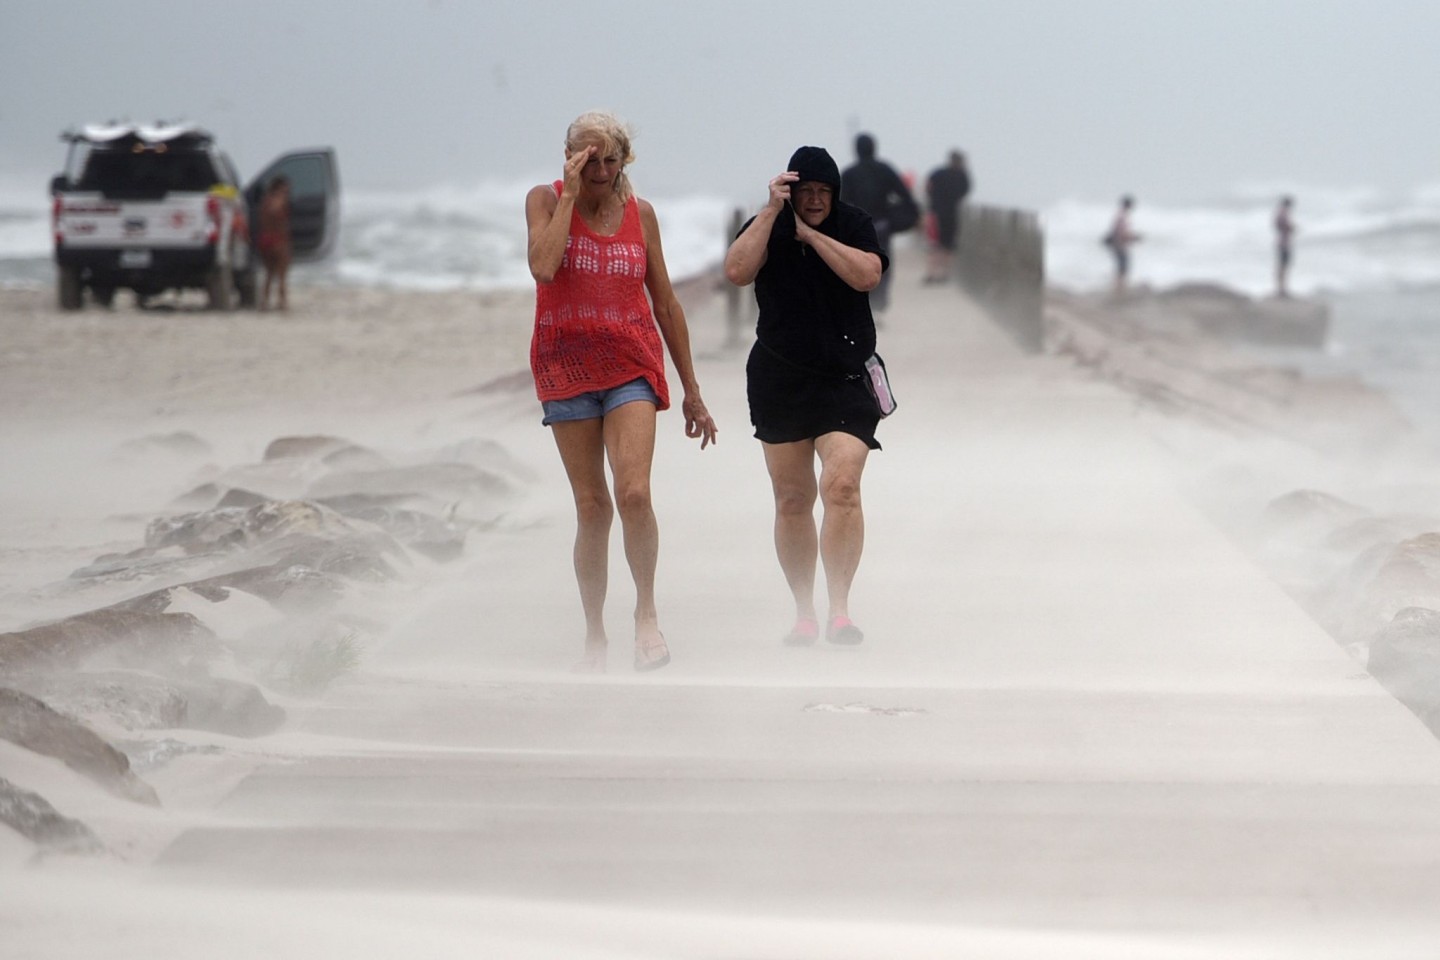 Hurrikan Nicholas bringt heftigen Wind und starken Regen an die texanische Golfküste.